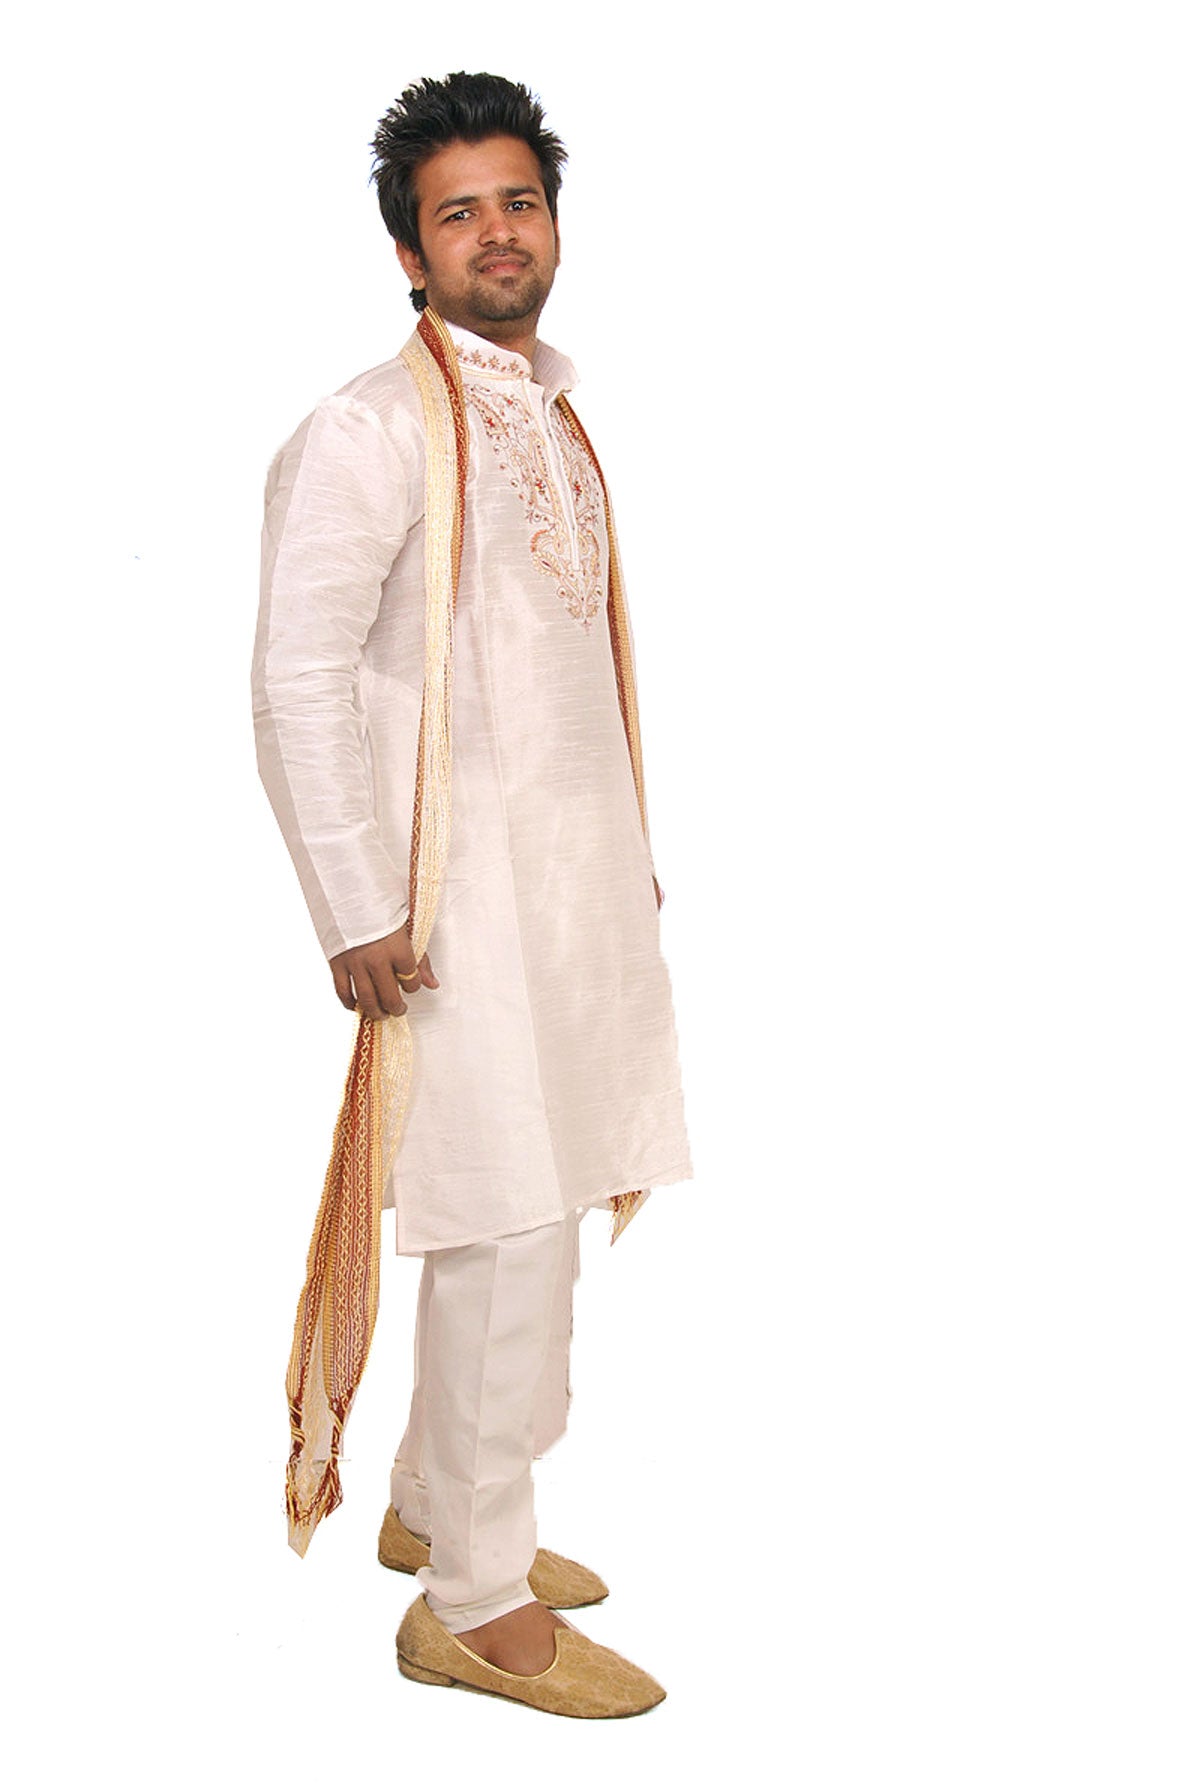 White Silk  Men’s Kurta Salwar with Matching Shawl | Ethnic Men’s Kurta Salwar